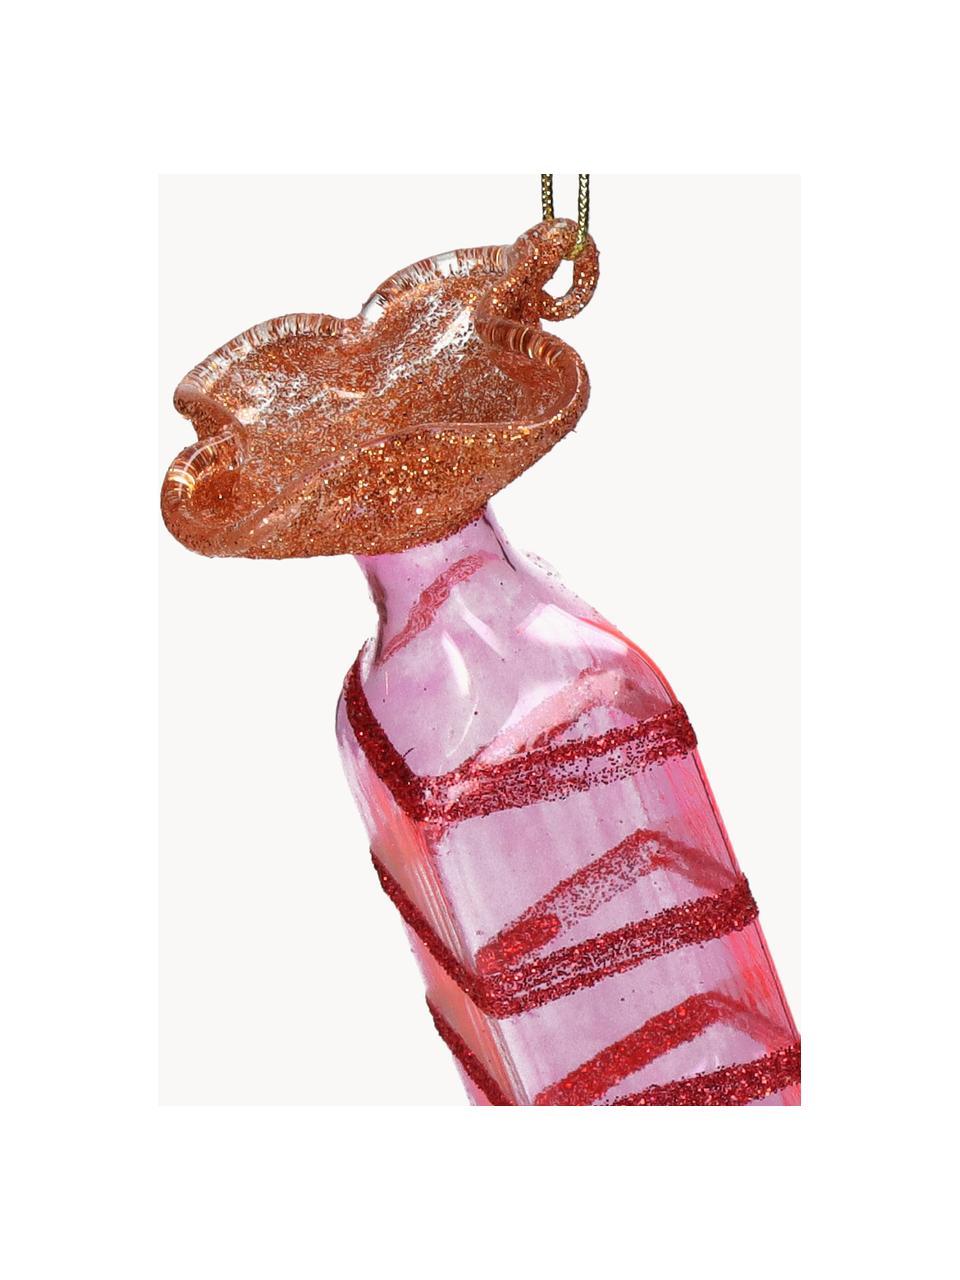 Ozdoba na vánoční stromeček ve tvaru bonbonu Candy, Sklo, Červená, růžová, transparentní, Š 4 cm, V 10 cm